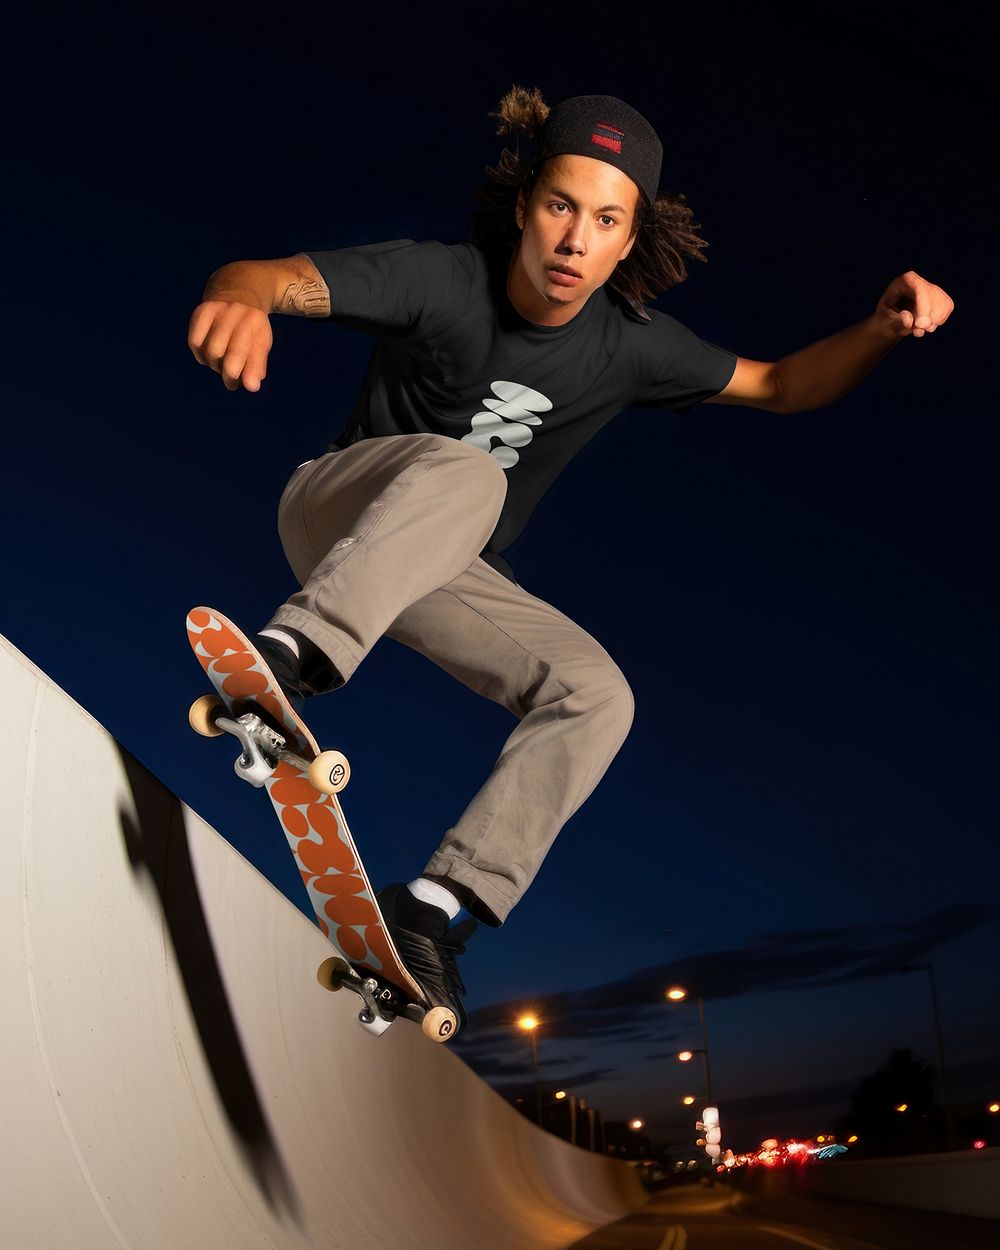 Man playing skateboard at night